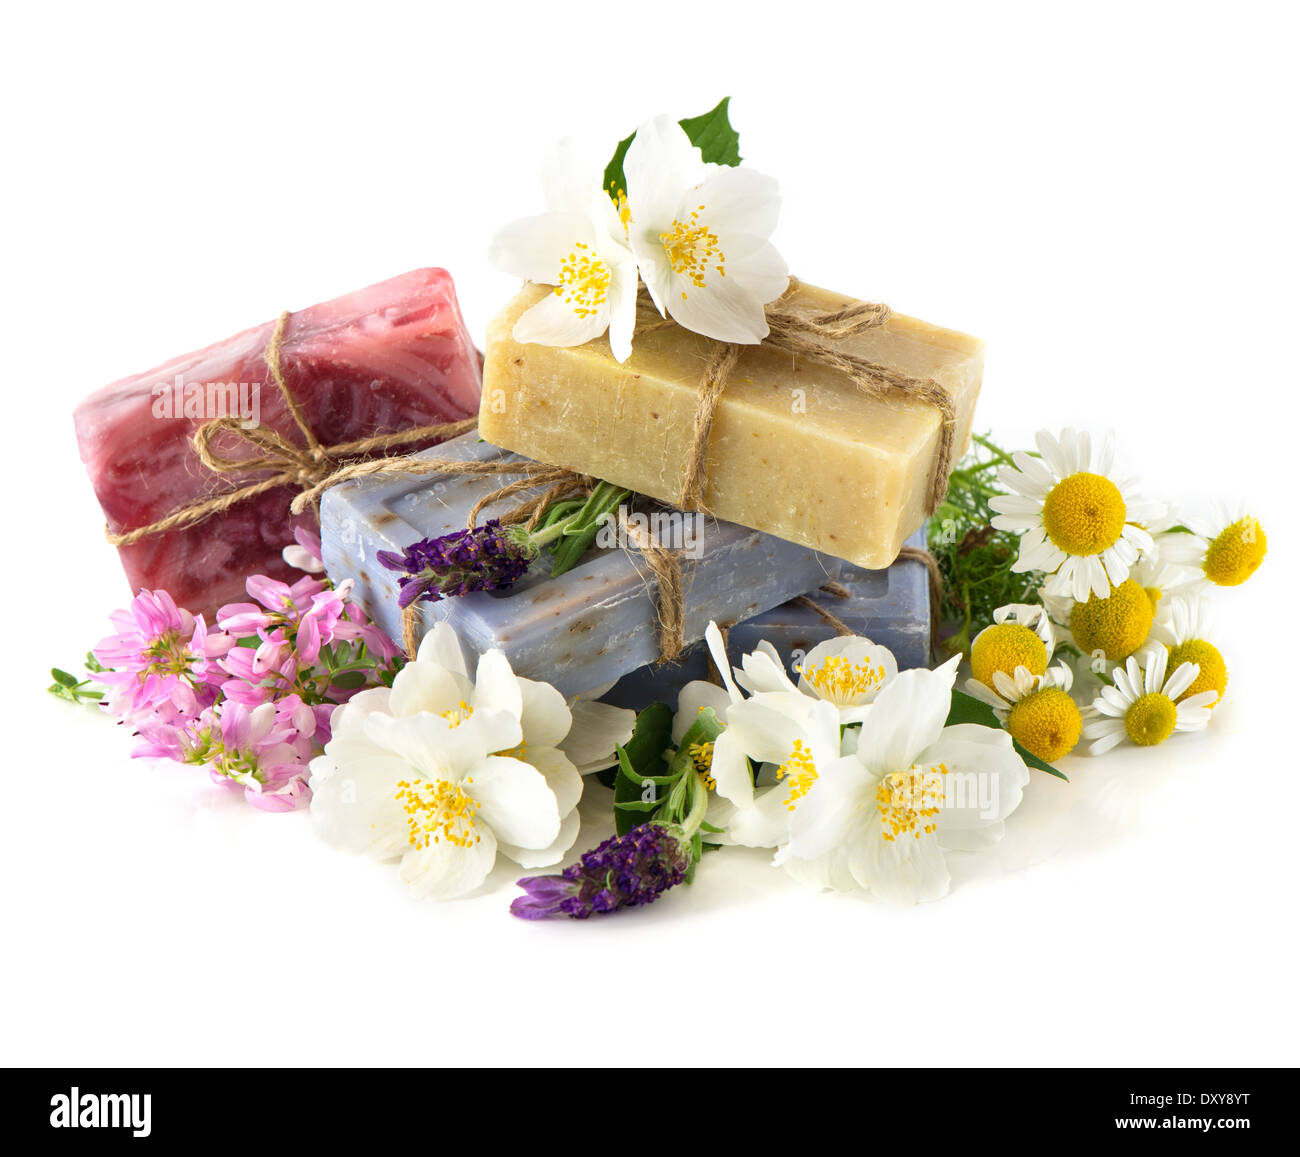 Saponette con fresco lavanda, gelsomino, trifoglio e i fiori di camomilla Foto Stock